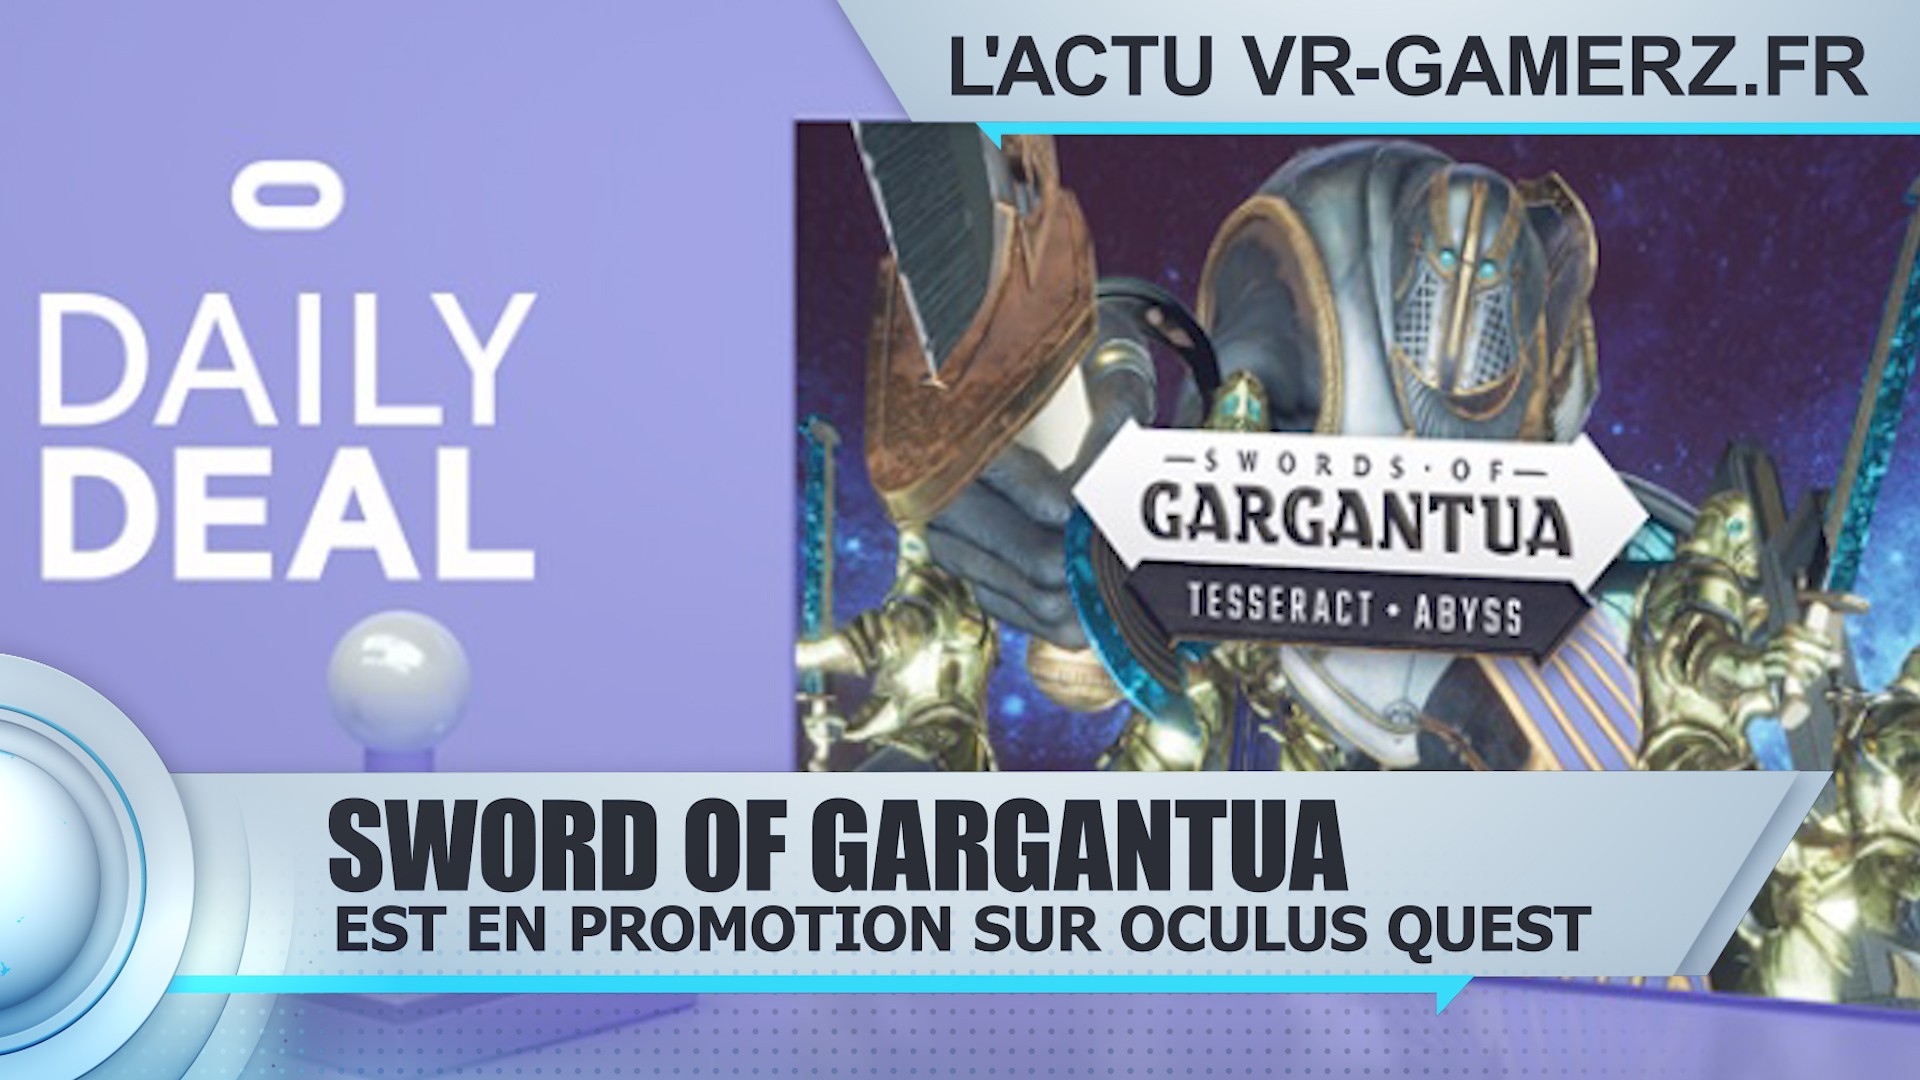 SWORDS of GARGANTUA est en promotion sur Oculus quest